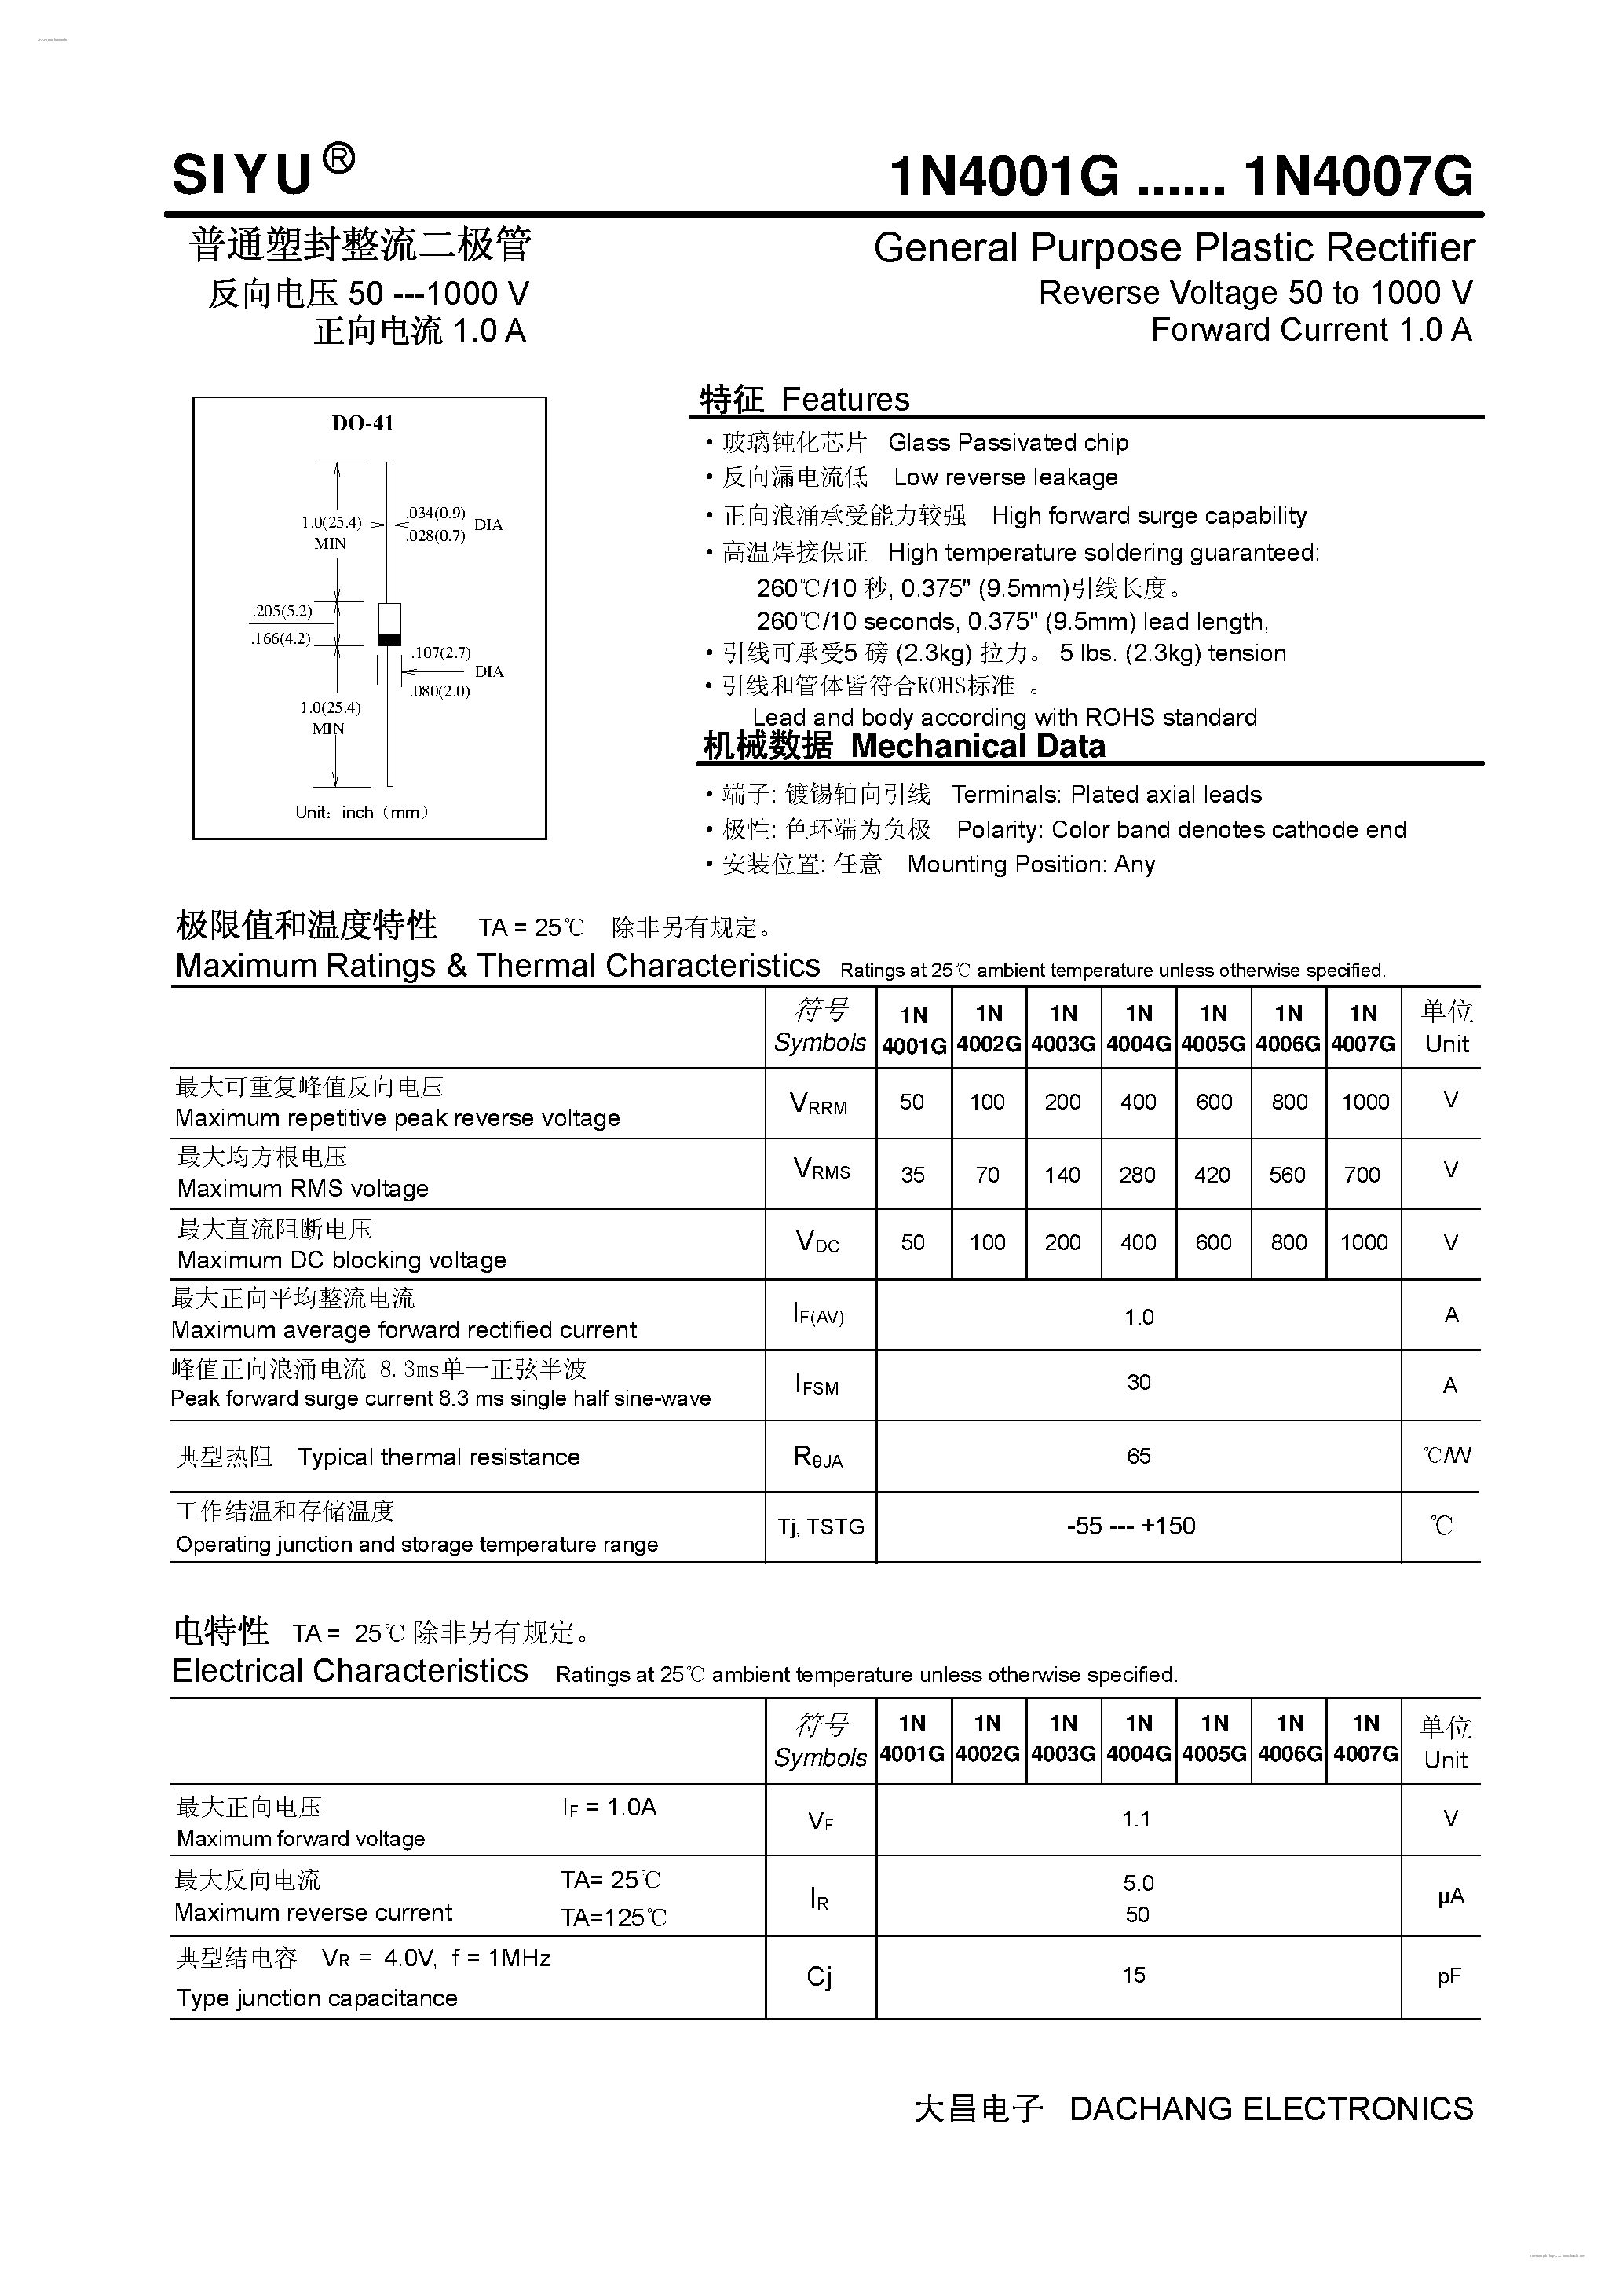 Datasheet 1N4001G - (1N4001G - 1N4007G) General Purpose Plastic Rectifier page 1